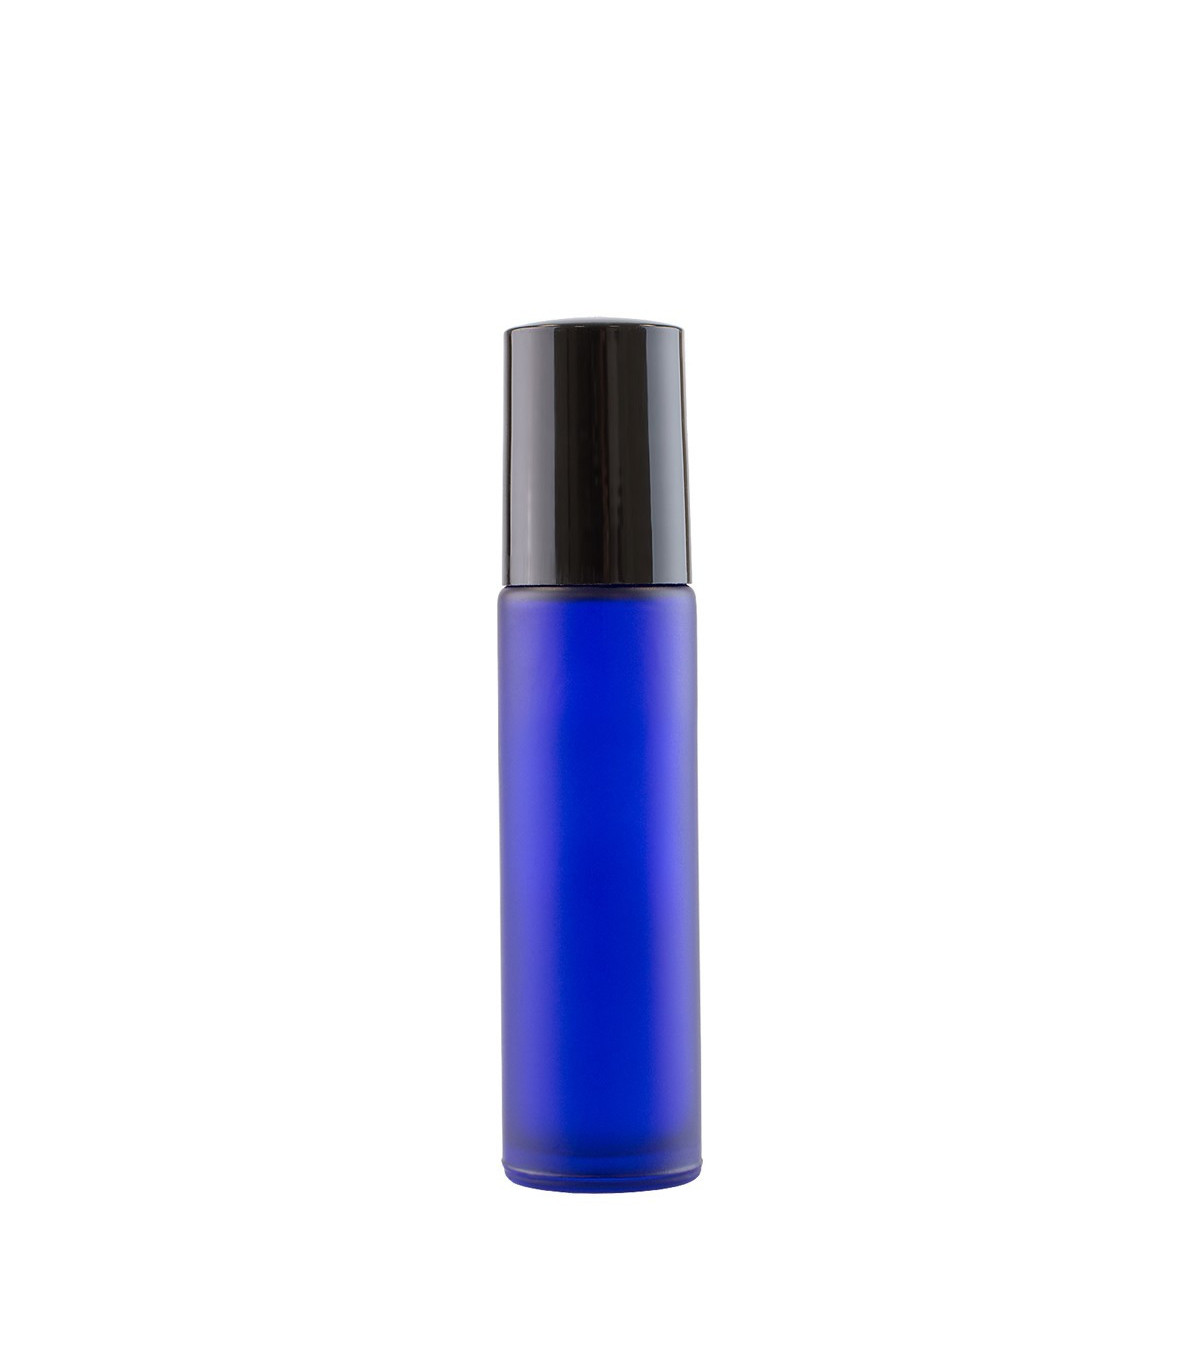 Bază Recipient Roll-On mini sticlă Albastră mată 10 ml